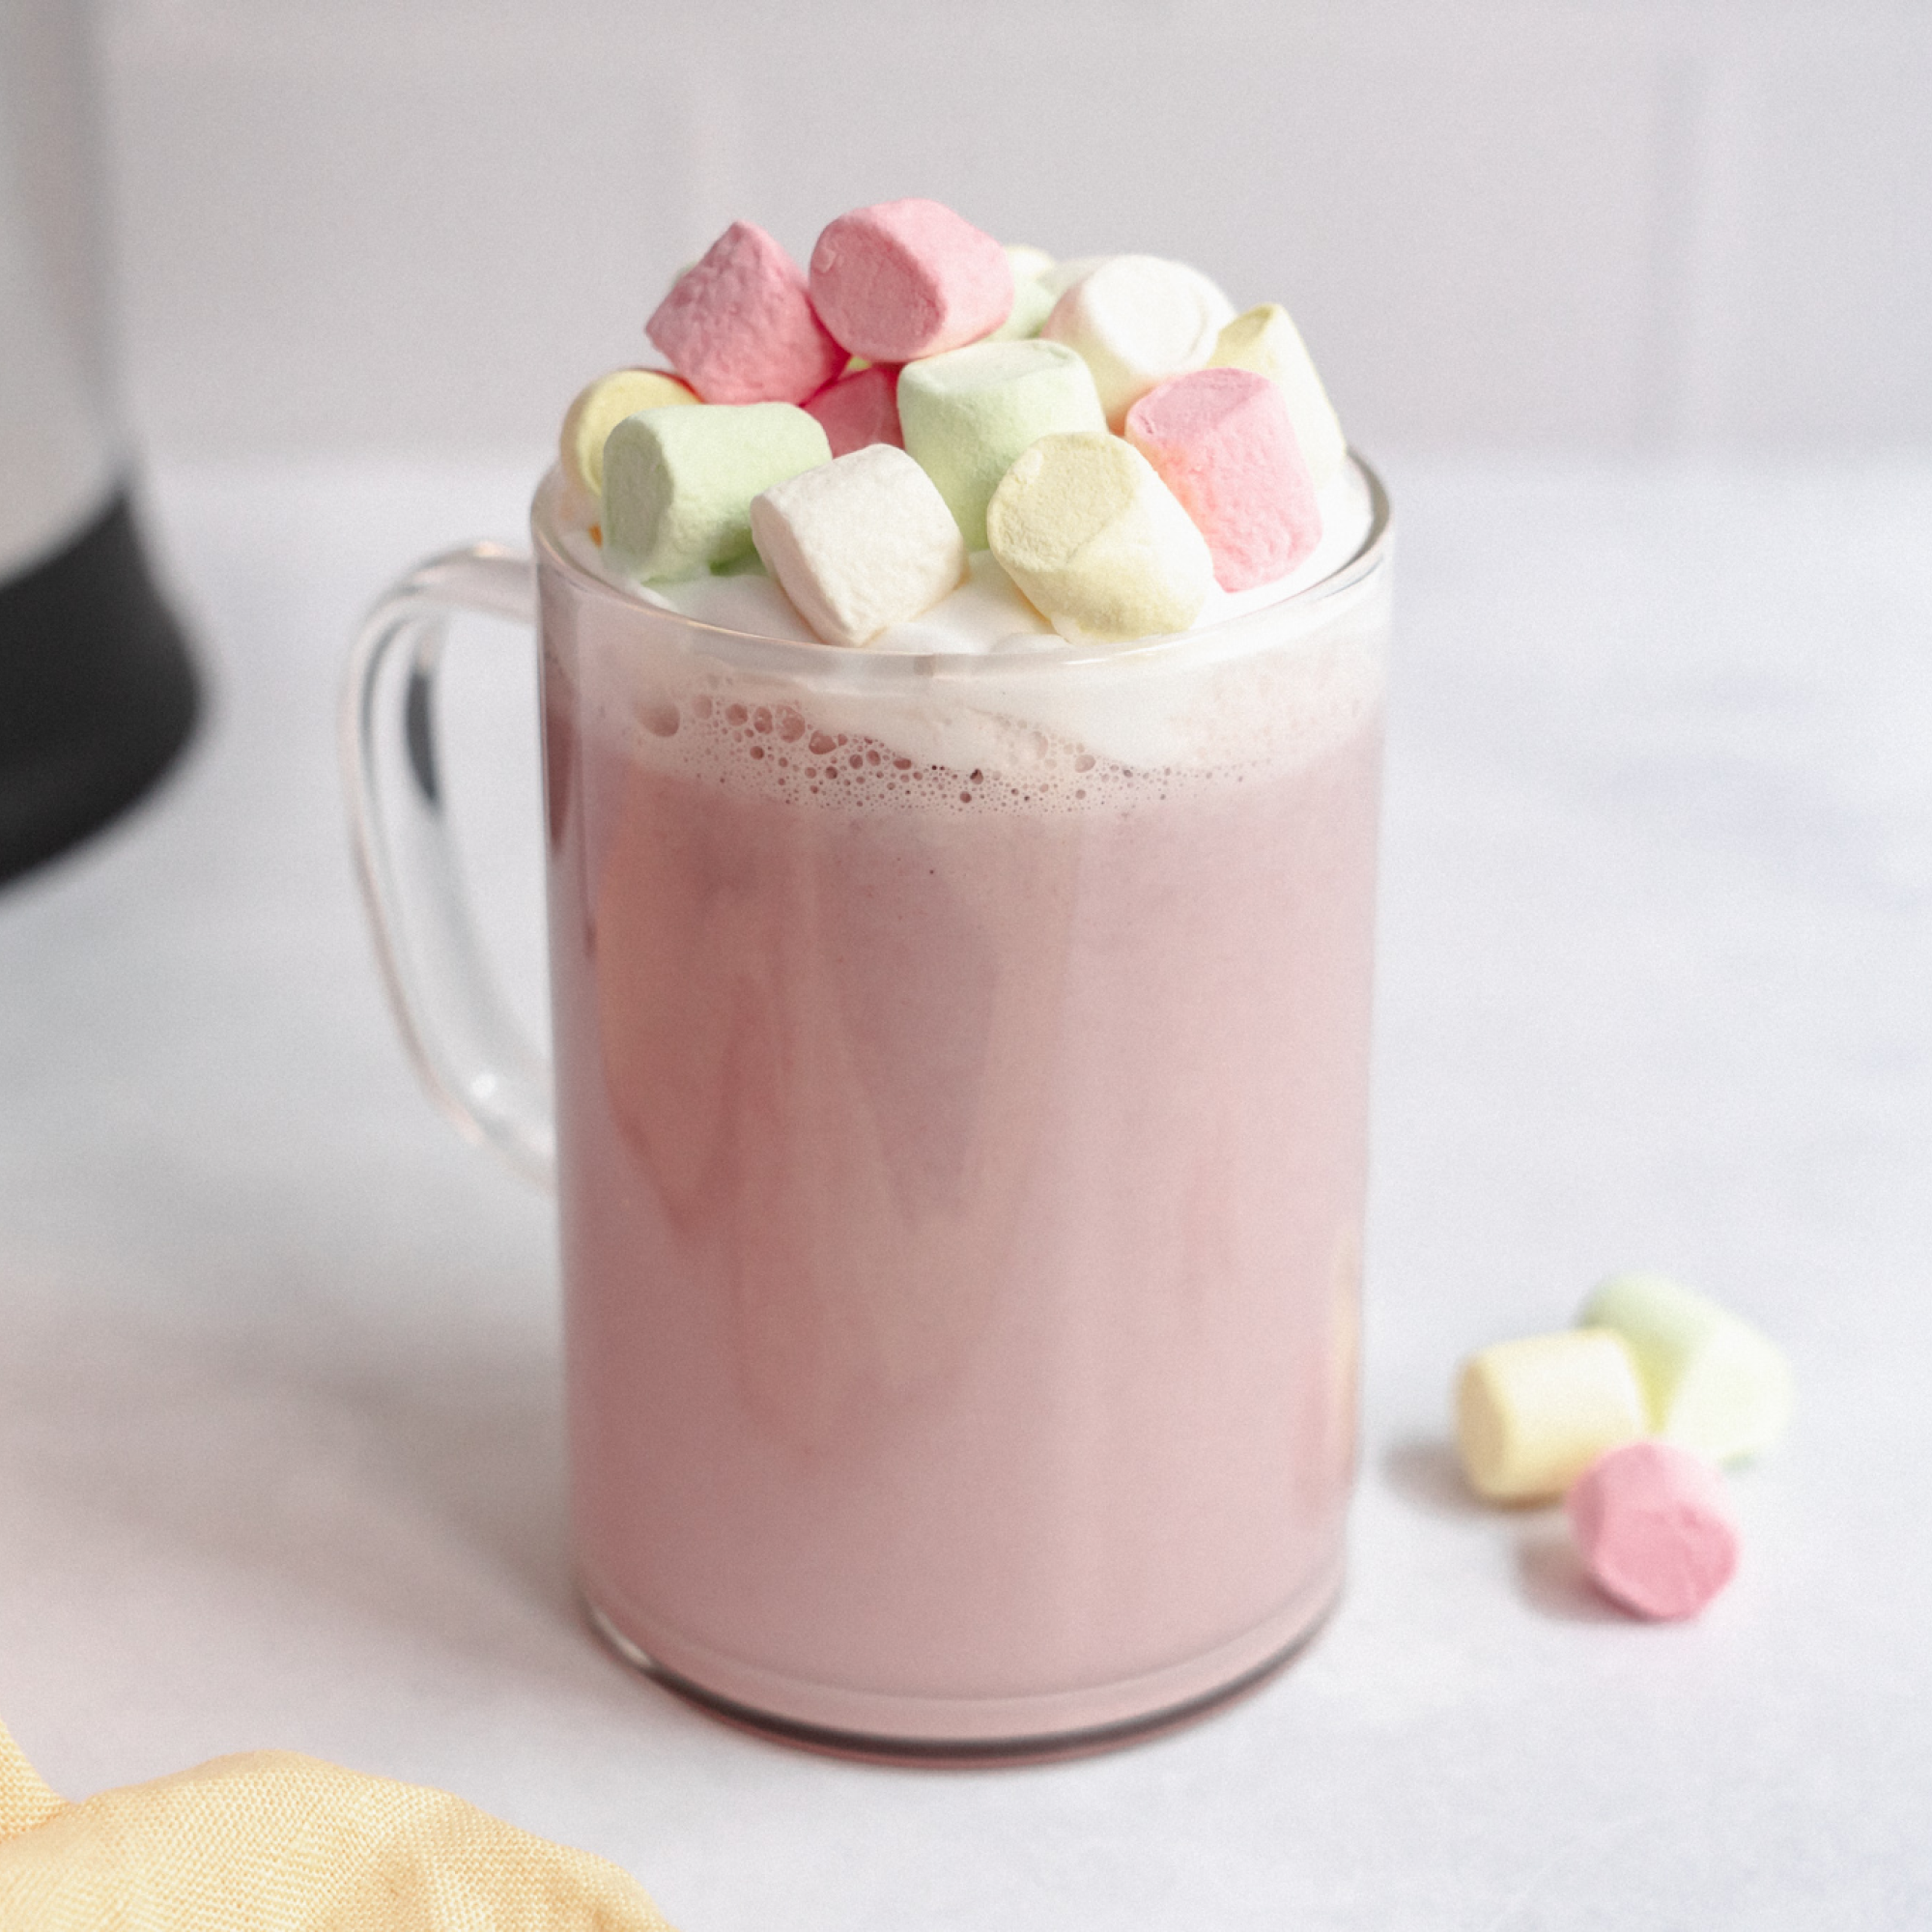 Pink Unicorn Hot Chocolate prepared with berries, cashews, and white chocolate